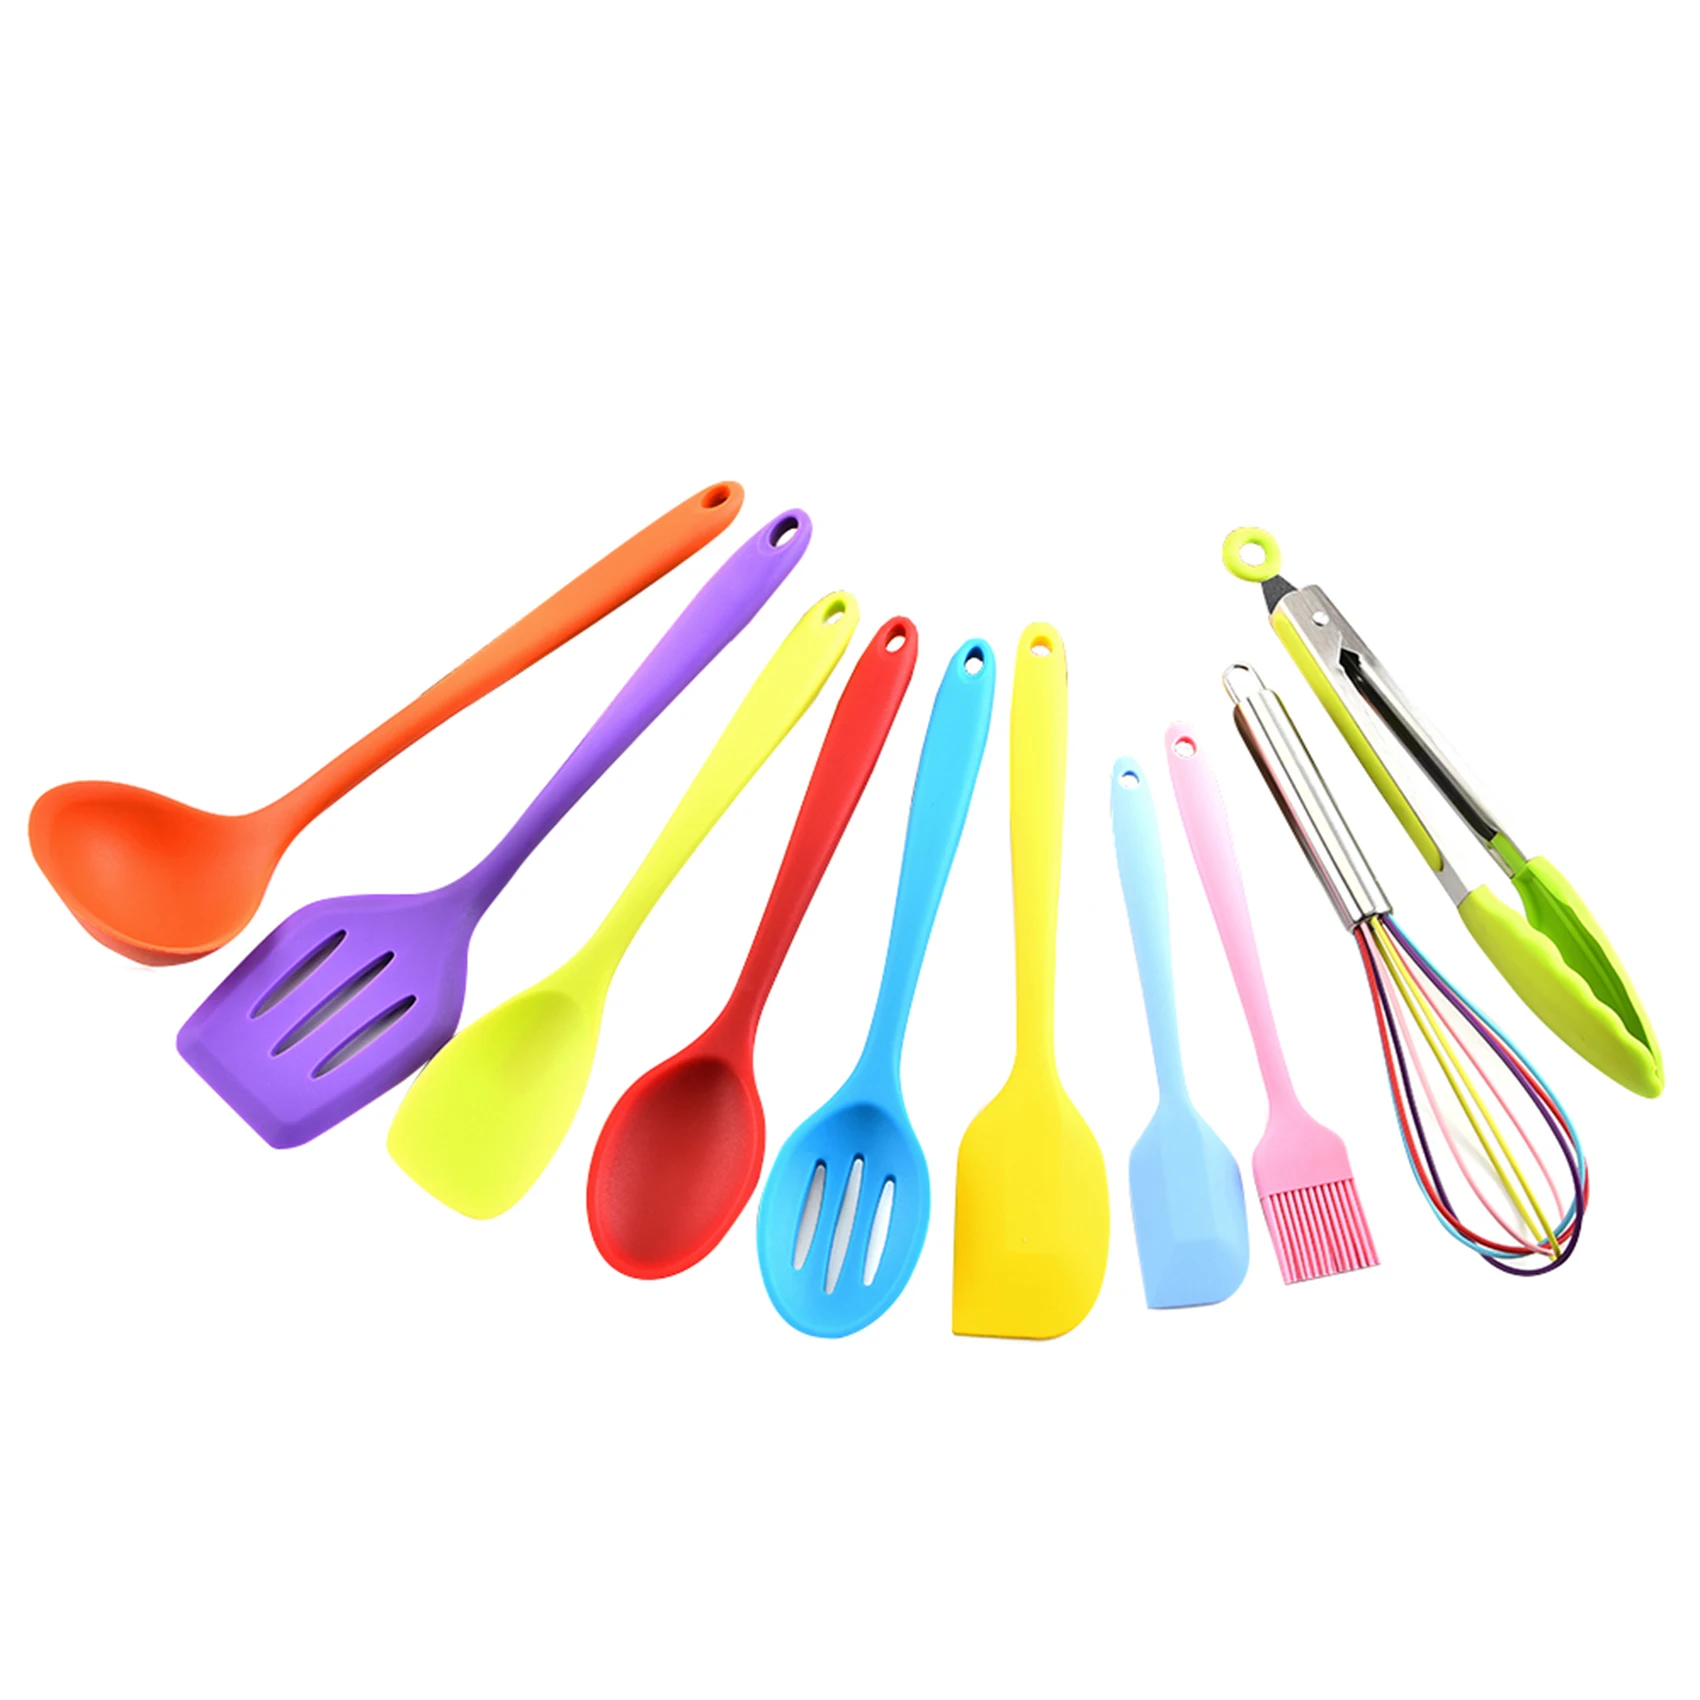 facile da usare e pulito Hillento silicone utensili da cucina set di utensili da cucina in silicone 5pcs set spatole pennello strumenti di cottura rosa 